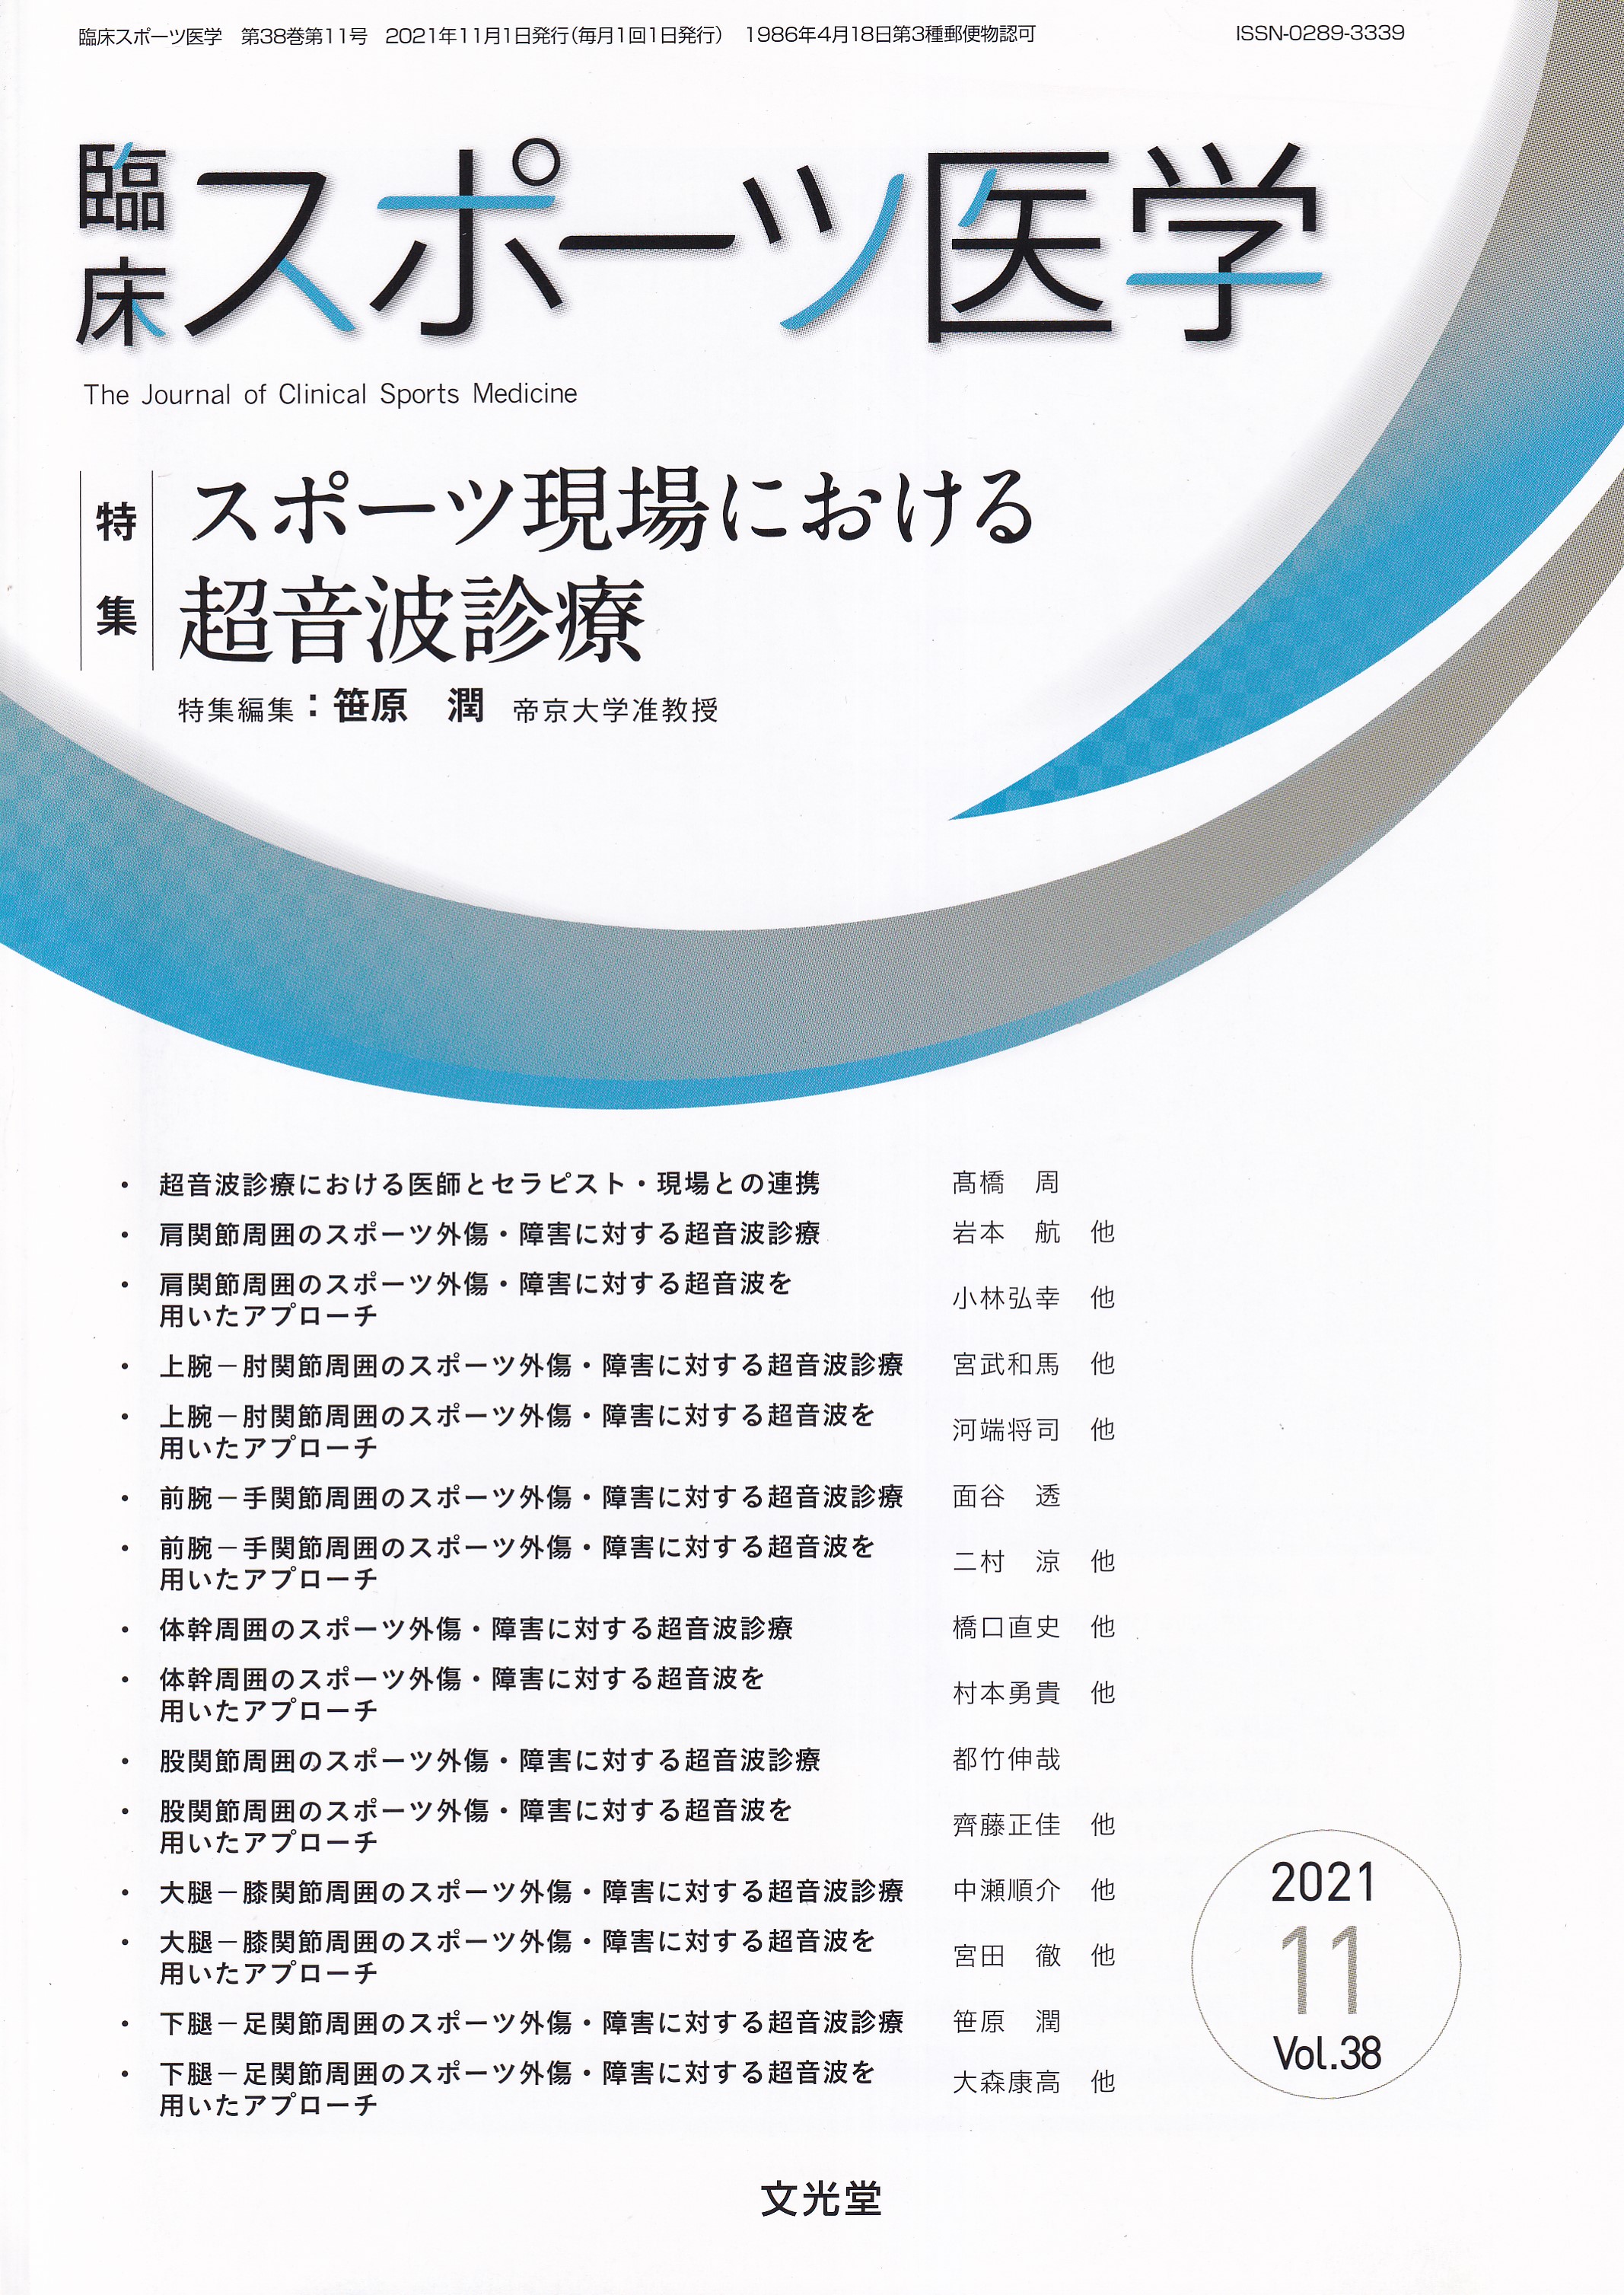 格安激安 臨床スポーツ医学 Vol.38 11月 ecousarecycling.com